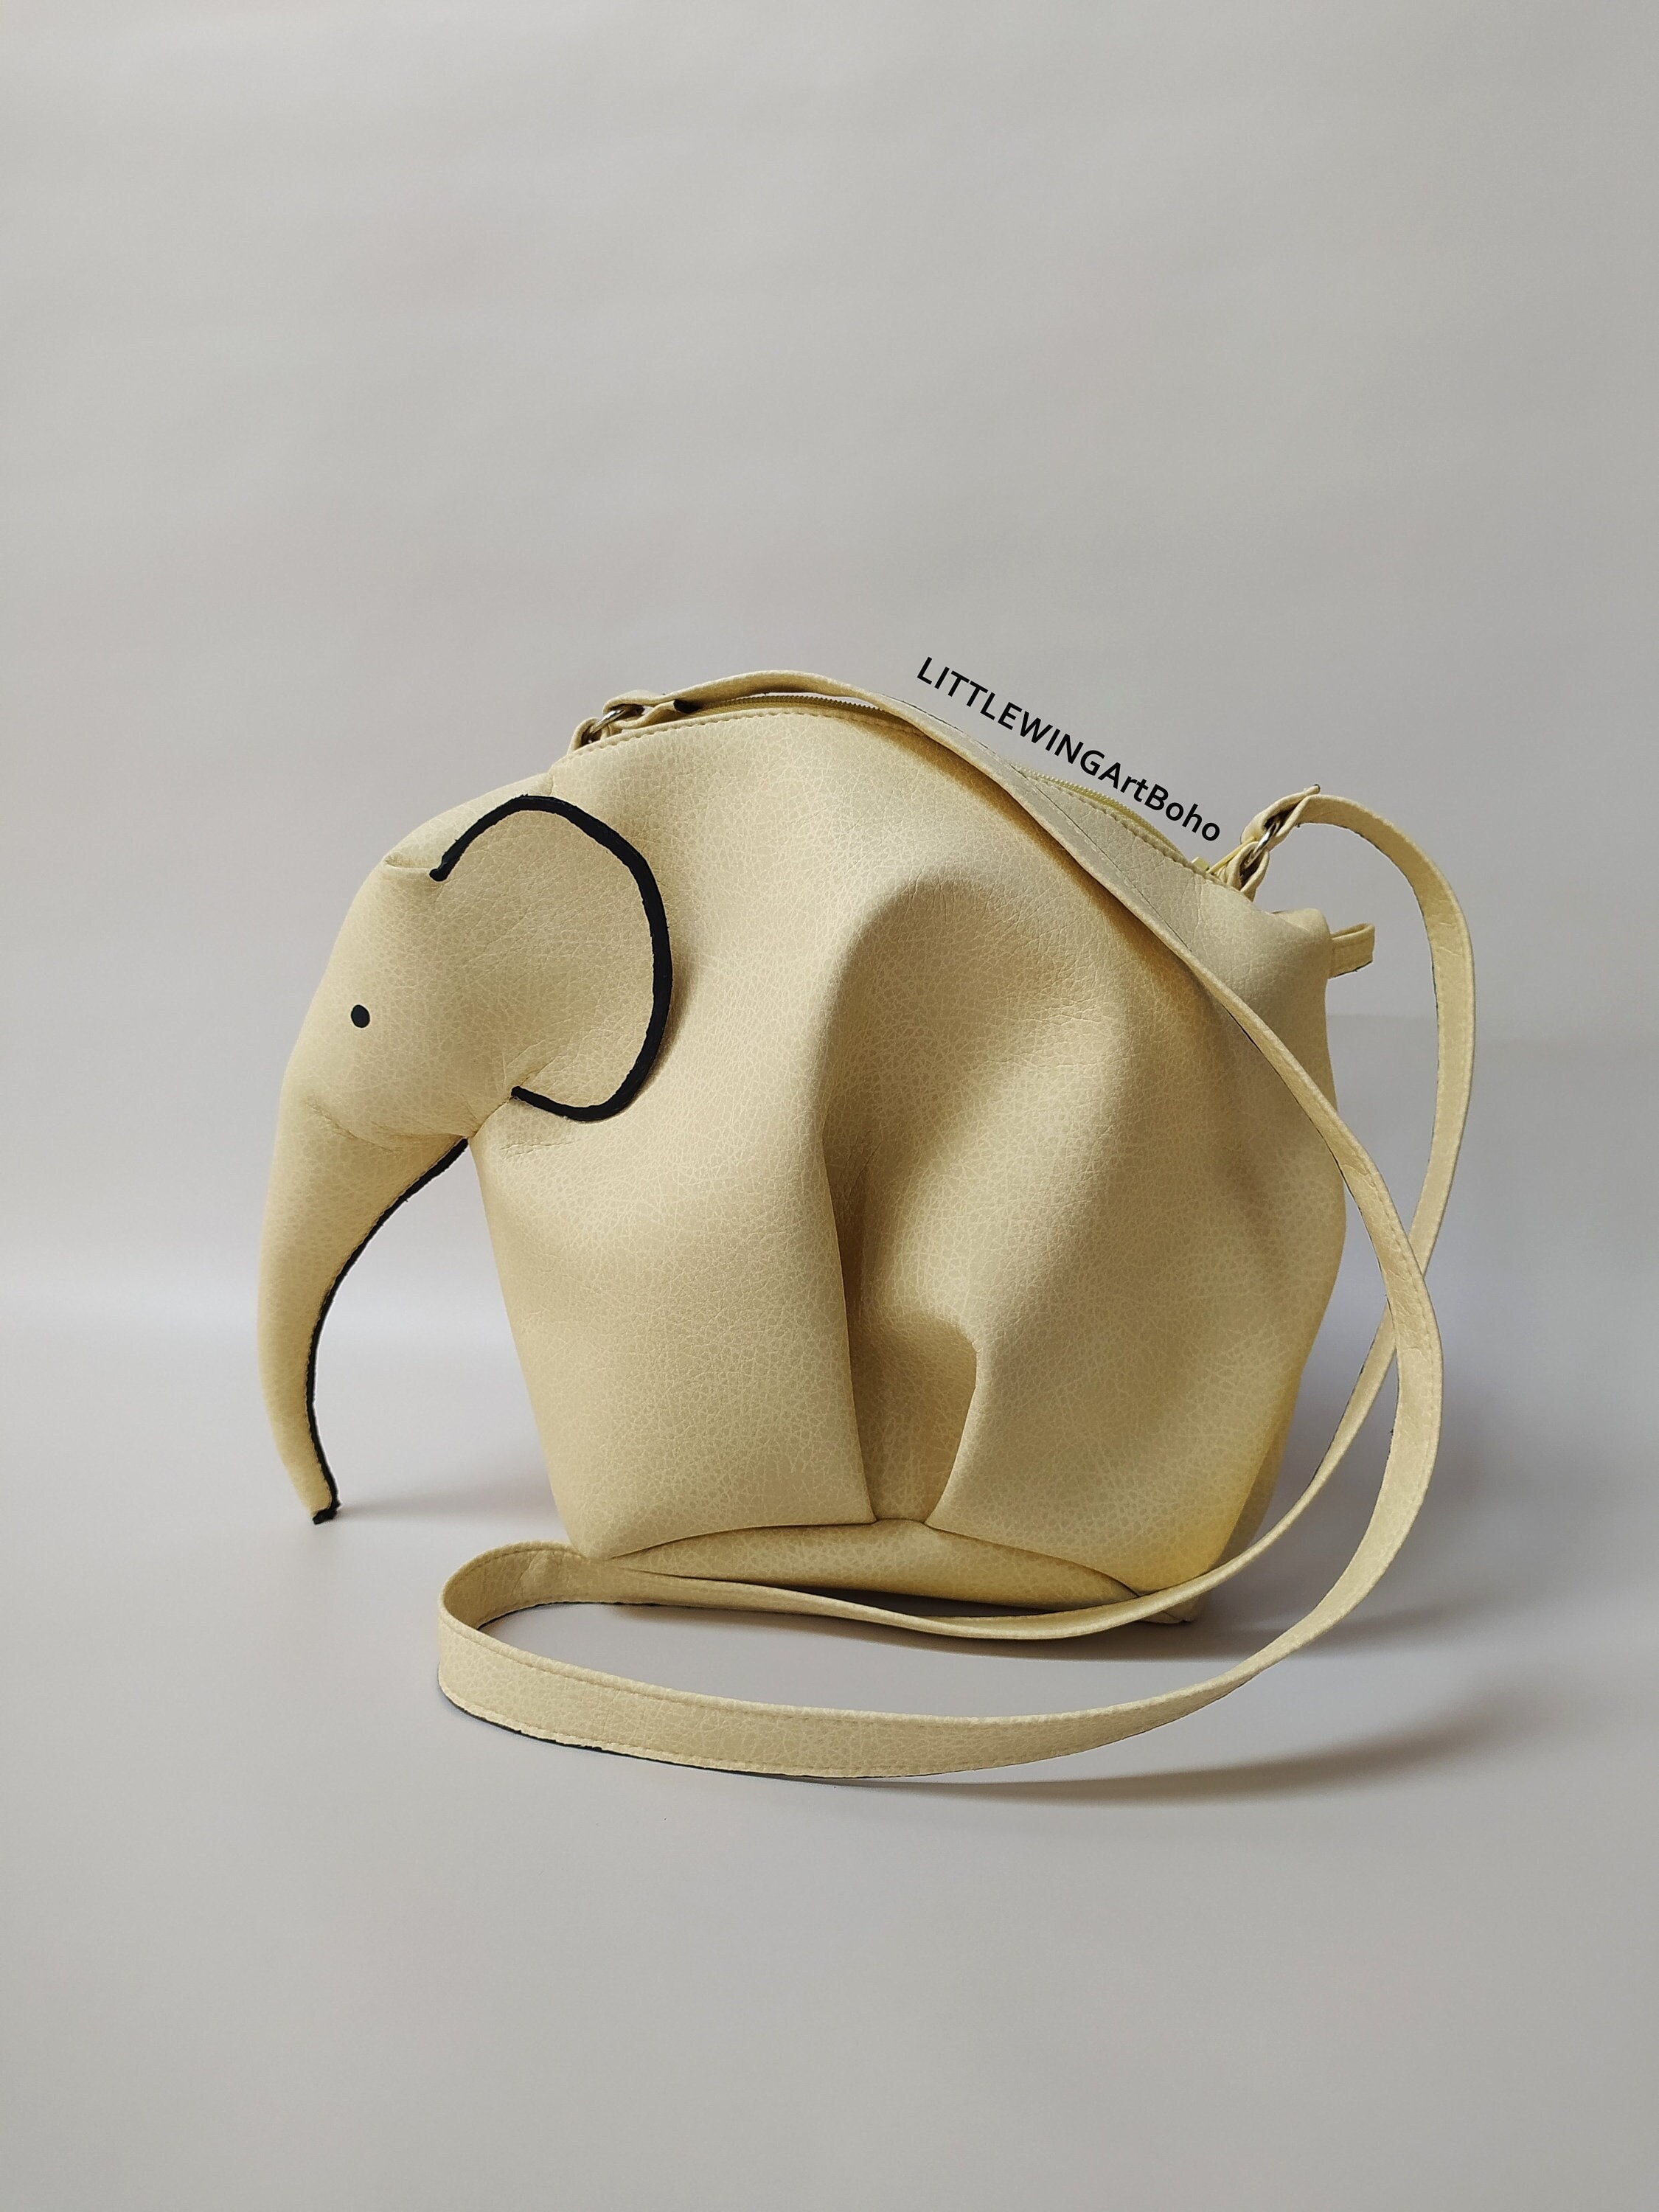 Elephant Leather Bag Family 2.0 Handbag – Jeremyarts